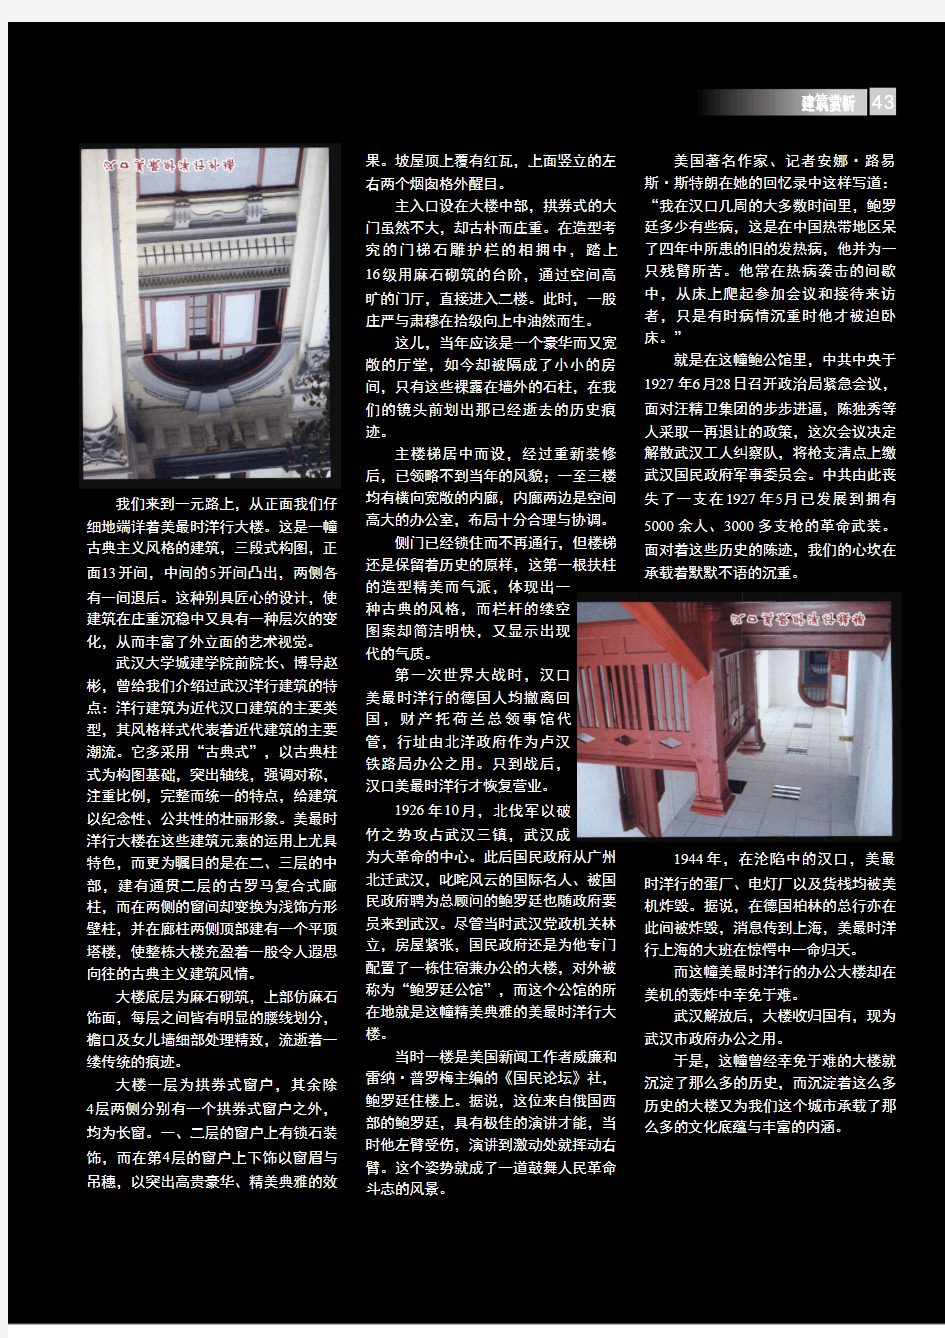 武汉百年建筑史话_之十二_一元万隆_汉口美最时洋行大楼